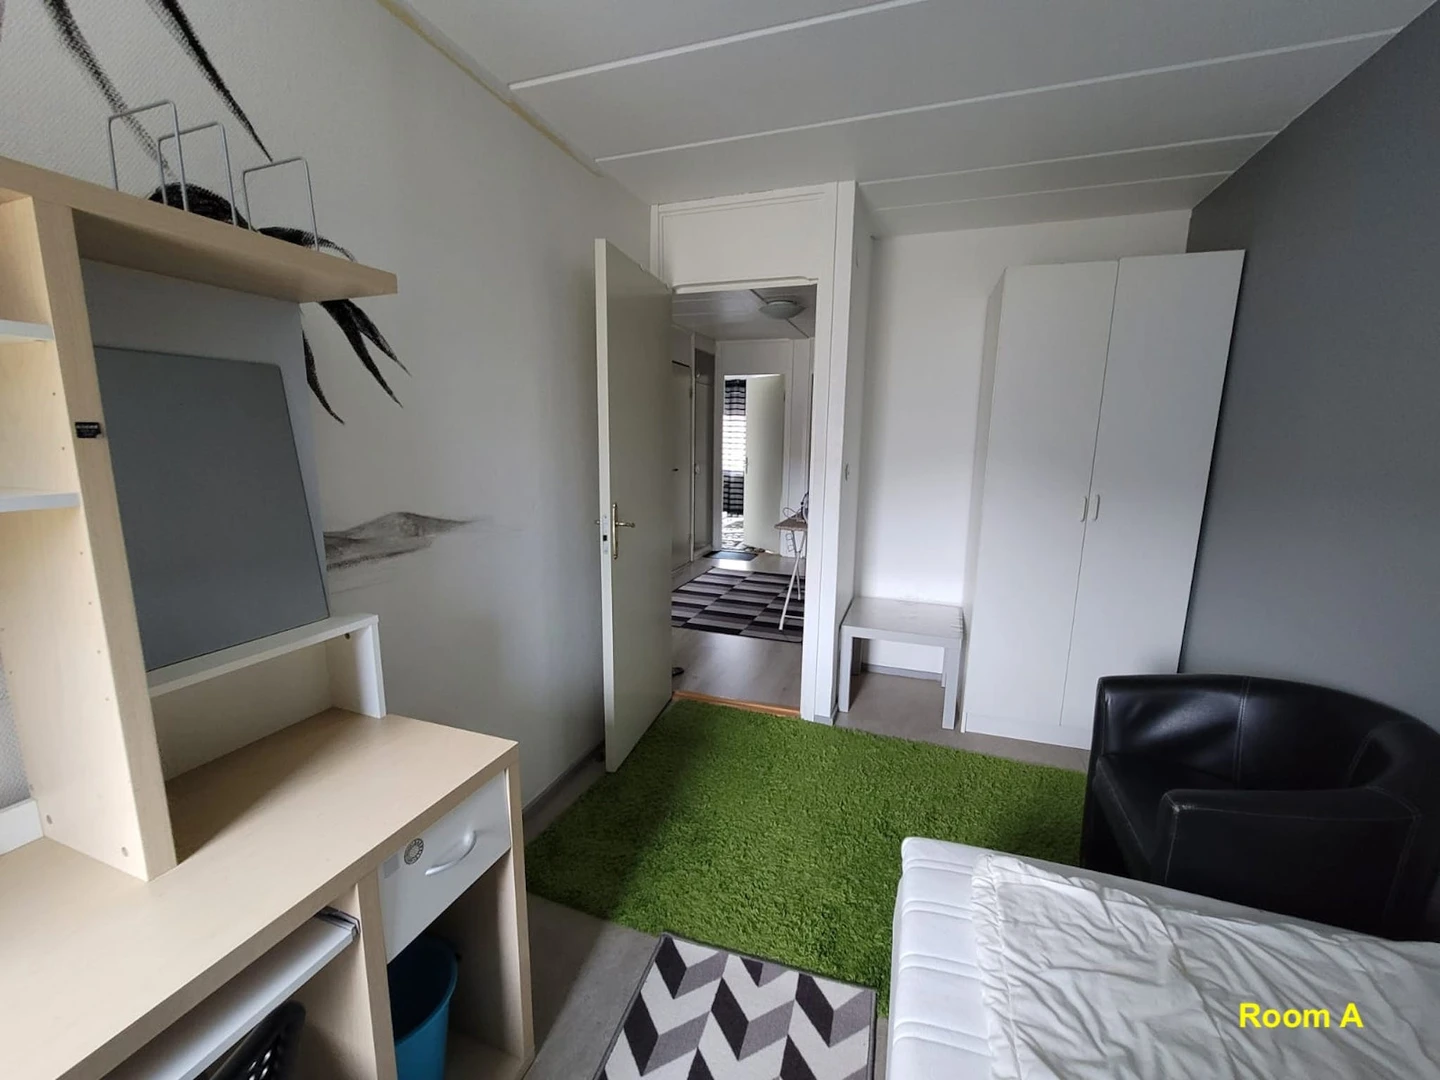 Pokój do wynajęcia z podwójnym łóżkiem w Sztokholm